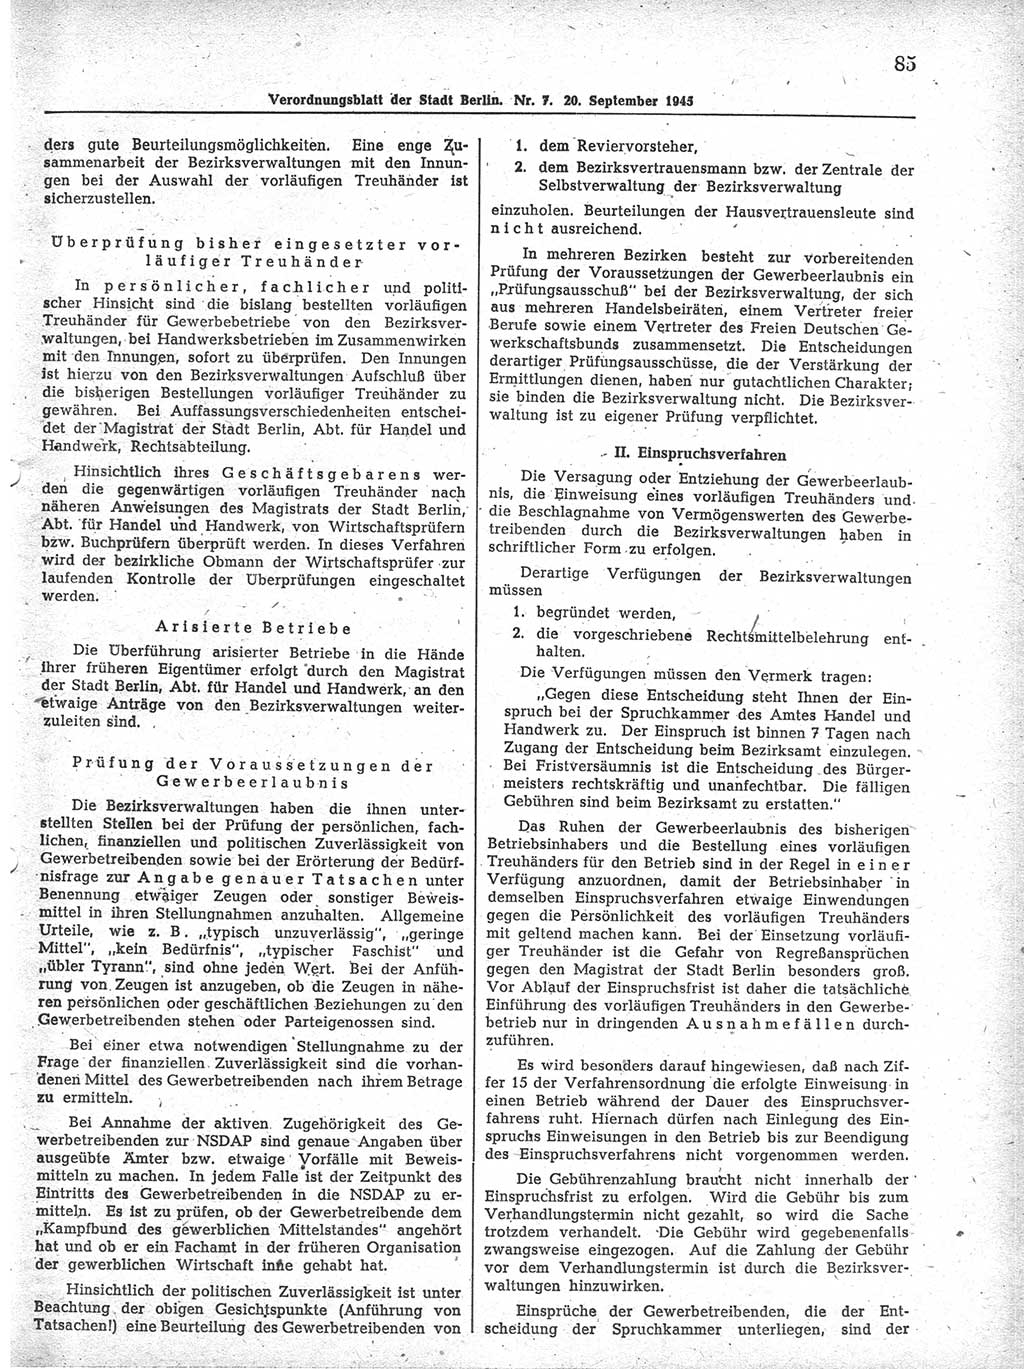 Verordnungsblatt (VOBl.) der Stadt Berlin 1945, Seite 85 (VOBl. Bln. 1945, S. 85)